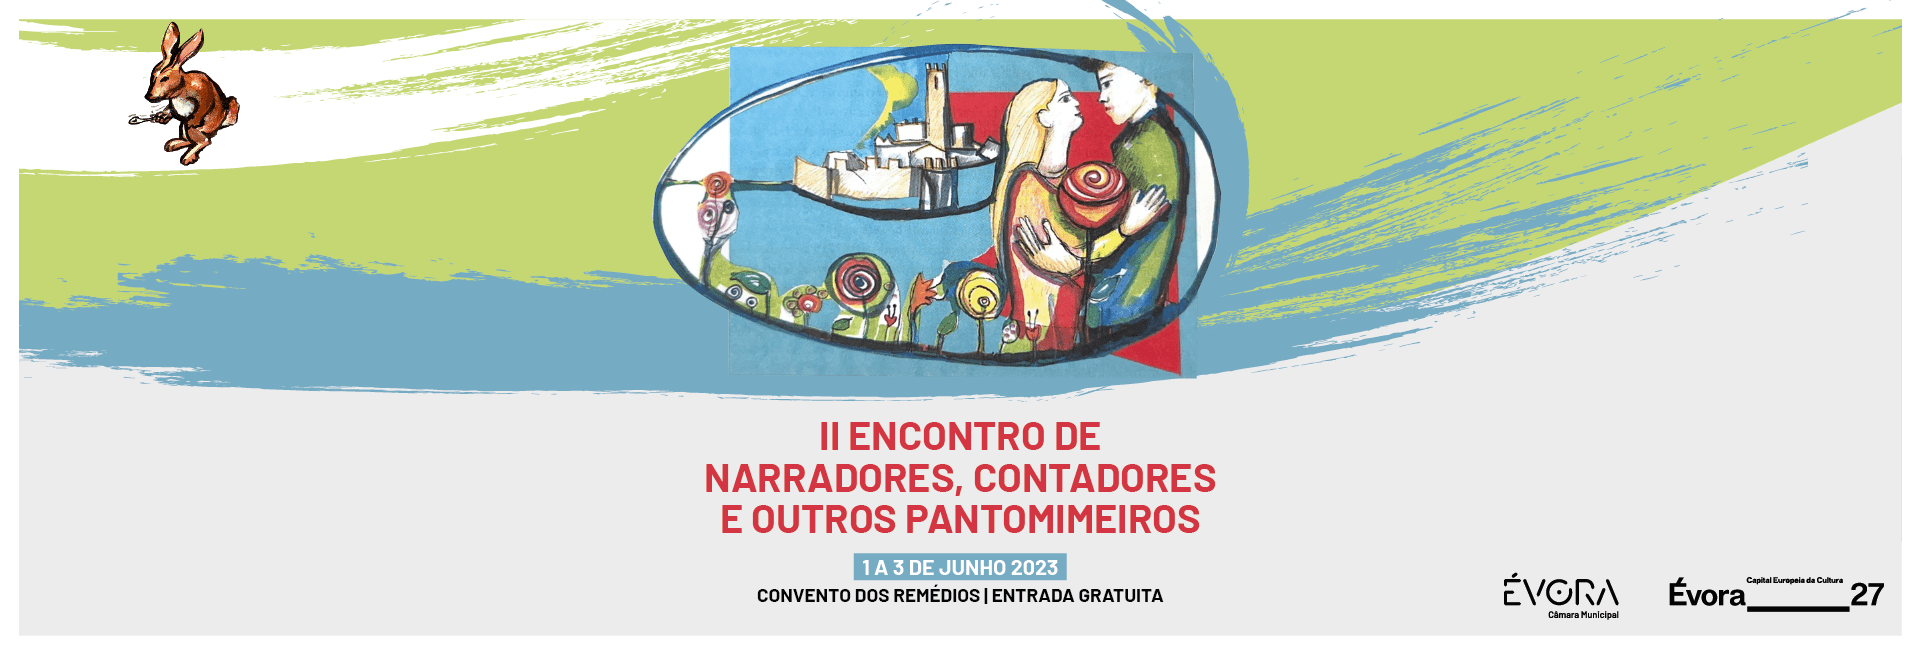 II ENCONTRO DE NARRADORES, CONTADORES E OUTROS PANTOMIMEIROS